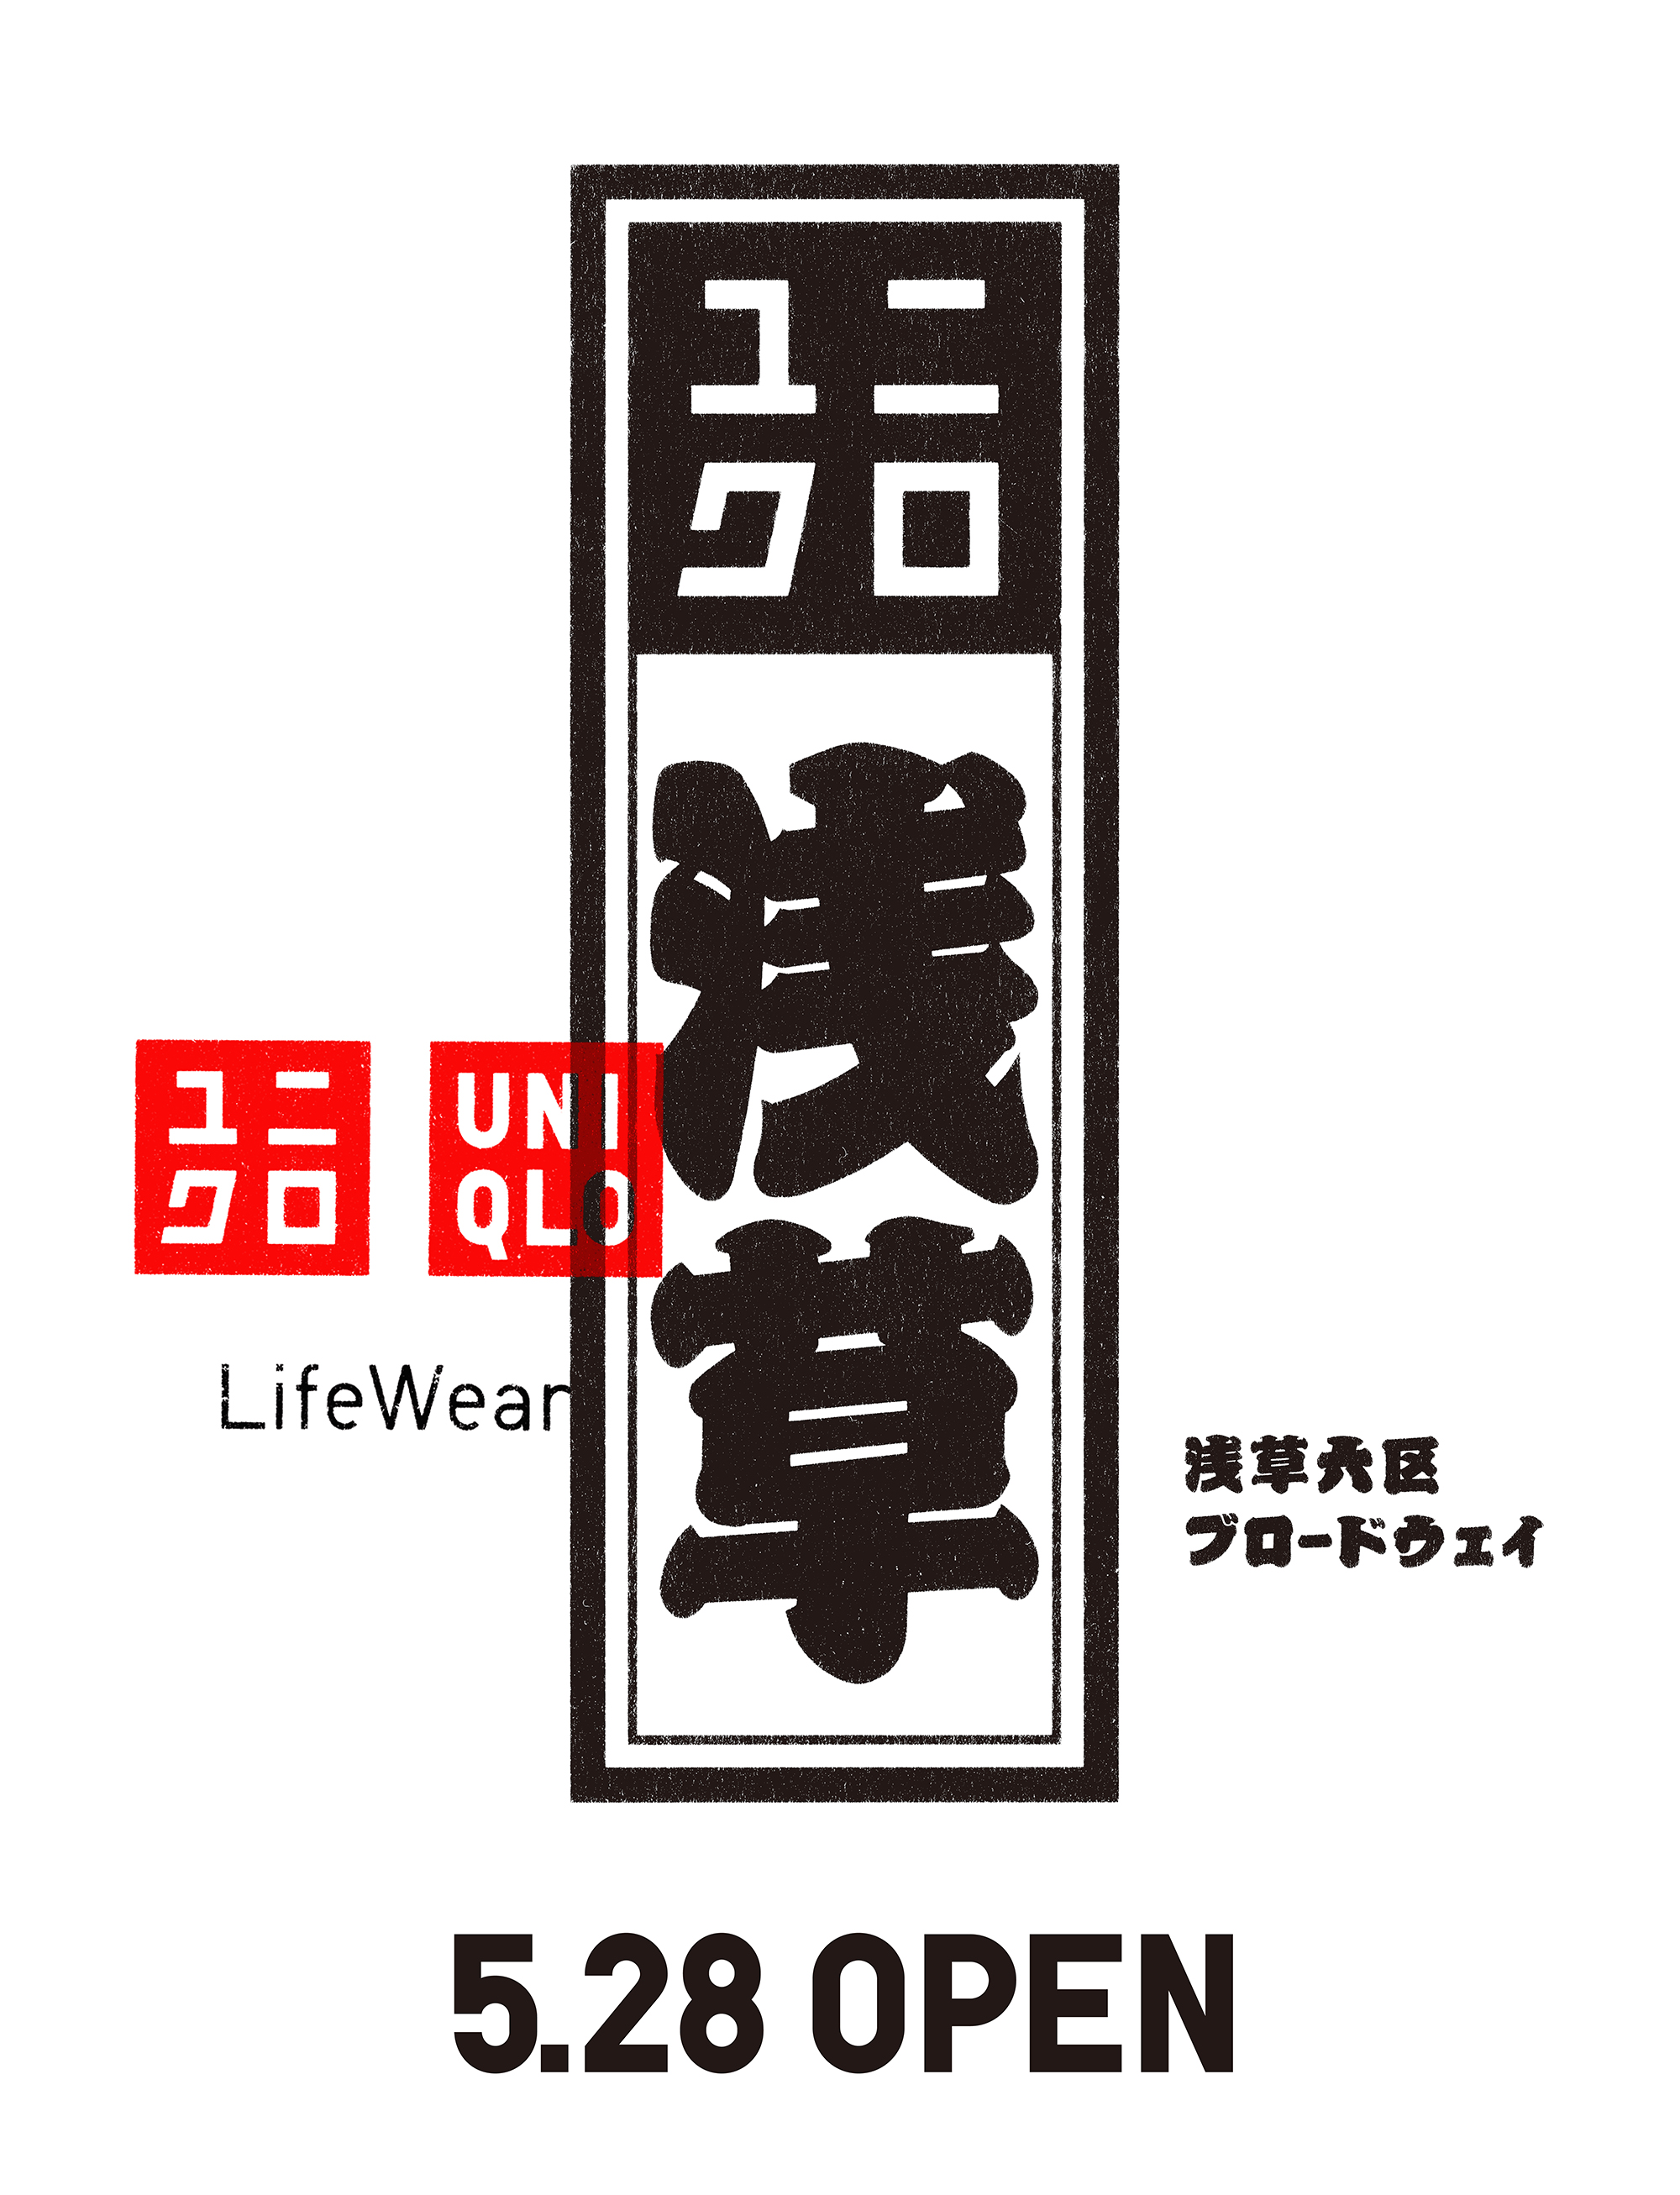 ユニクロ 浅草 5月28日 金 オープン 株式会社ユニクロのプレスリリース